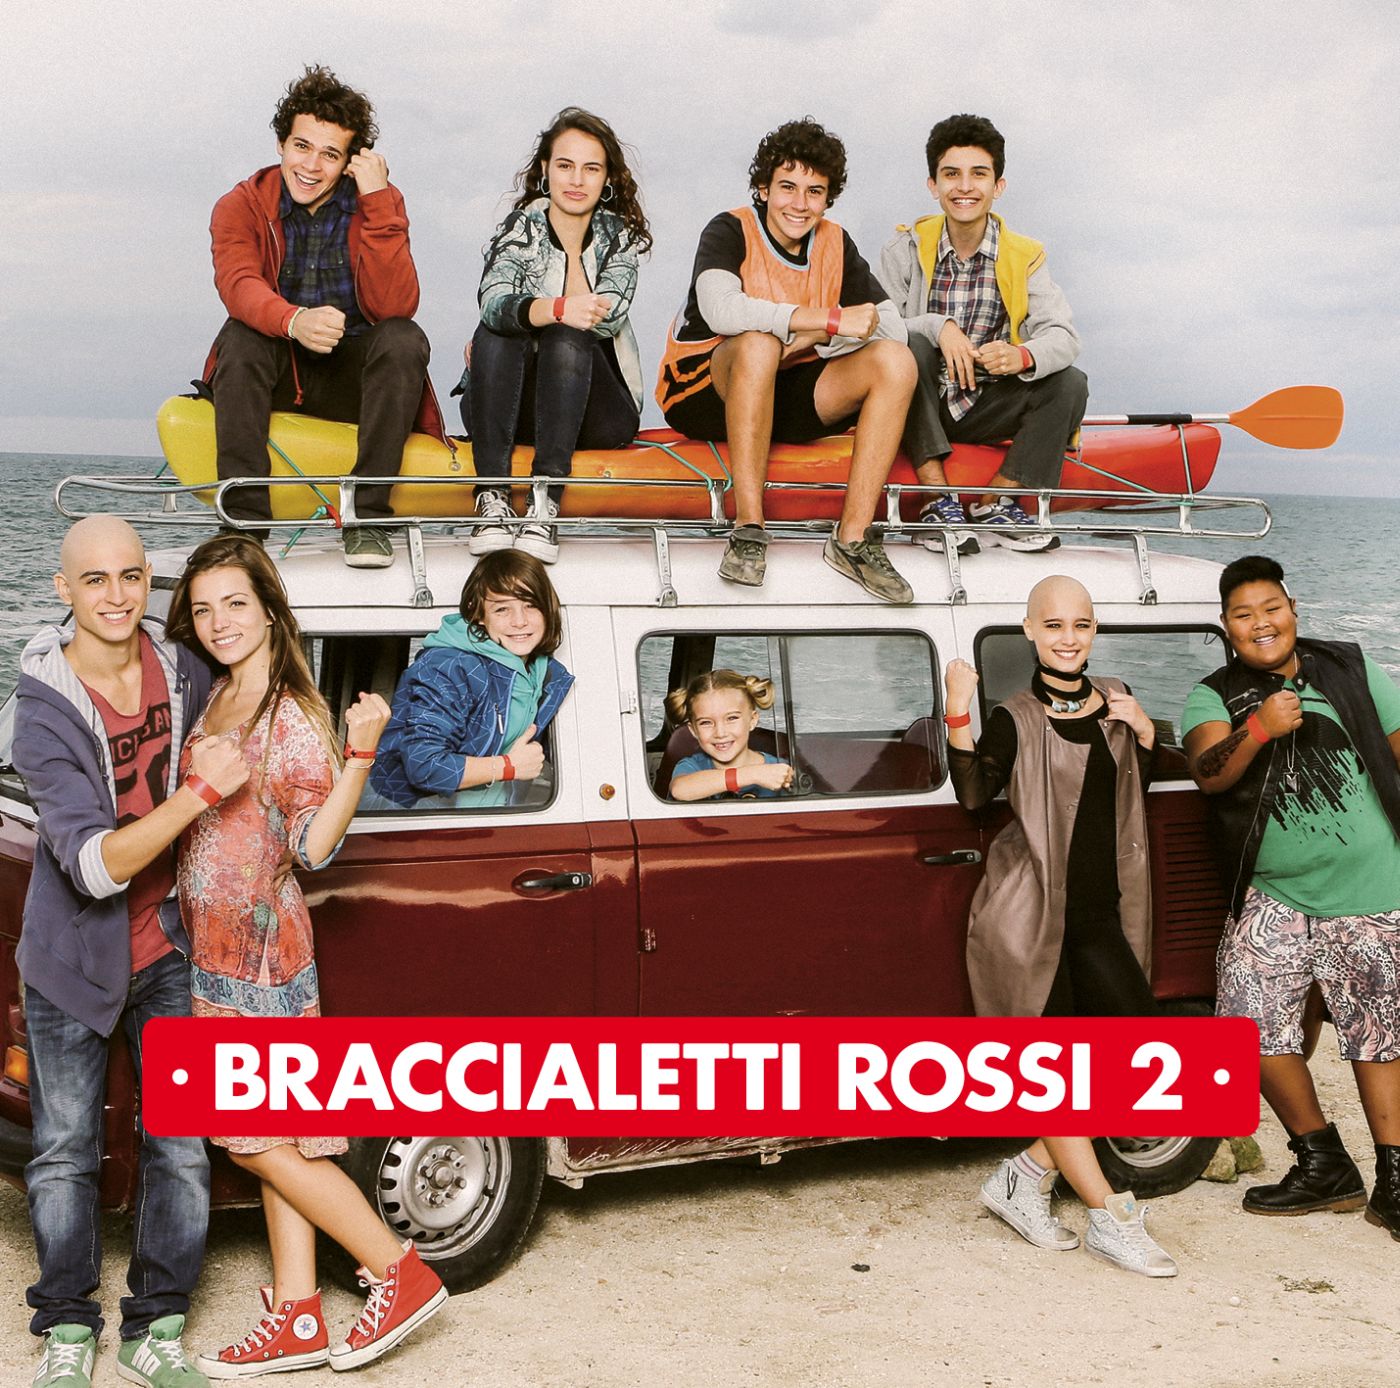  Braccialetti Rossi 2, seconda compilation più venduta della settimana